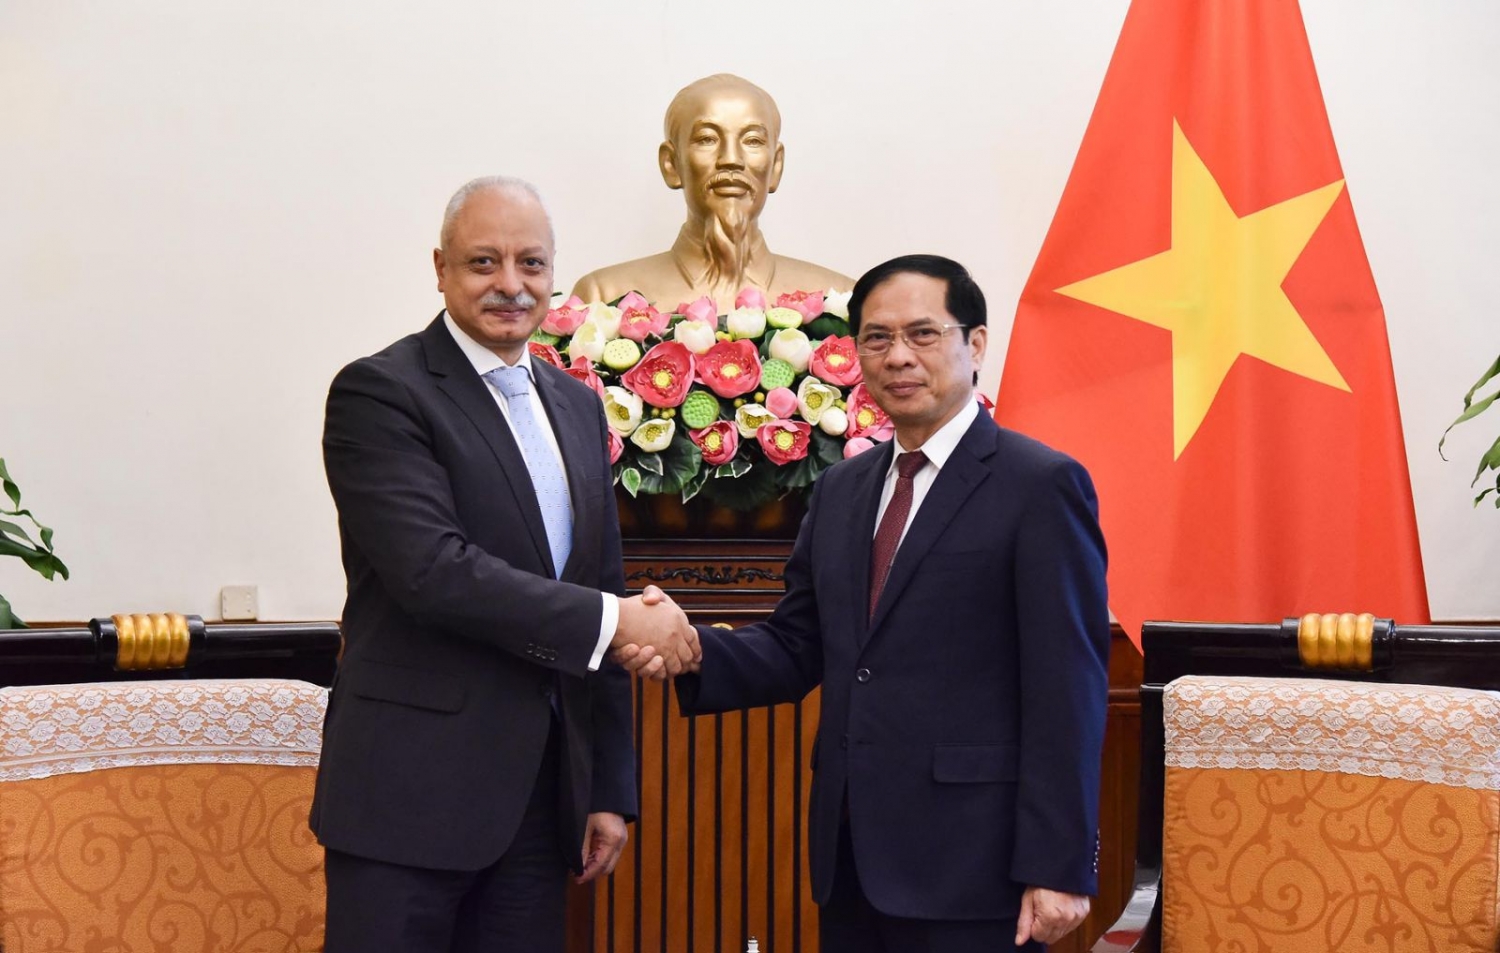 Thúc đẩy hơn nữa quan hệ hợp tác nhiều mặt Việt Nam - Ai Cập